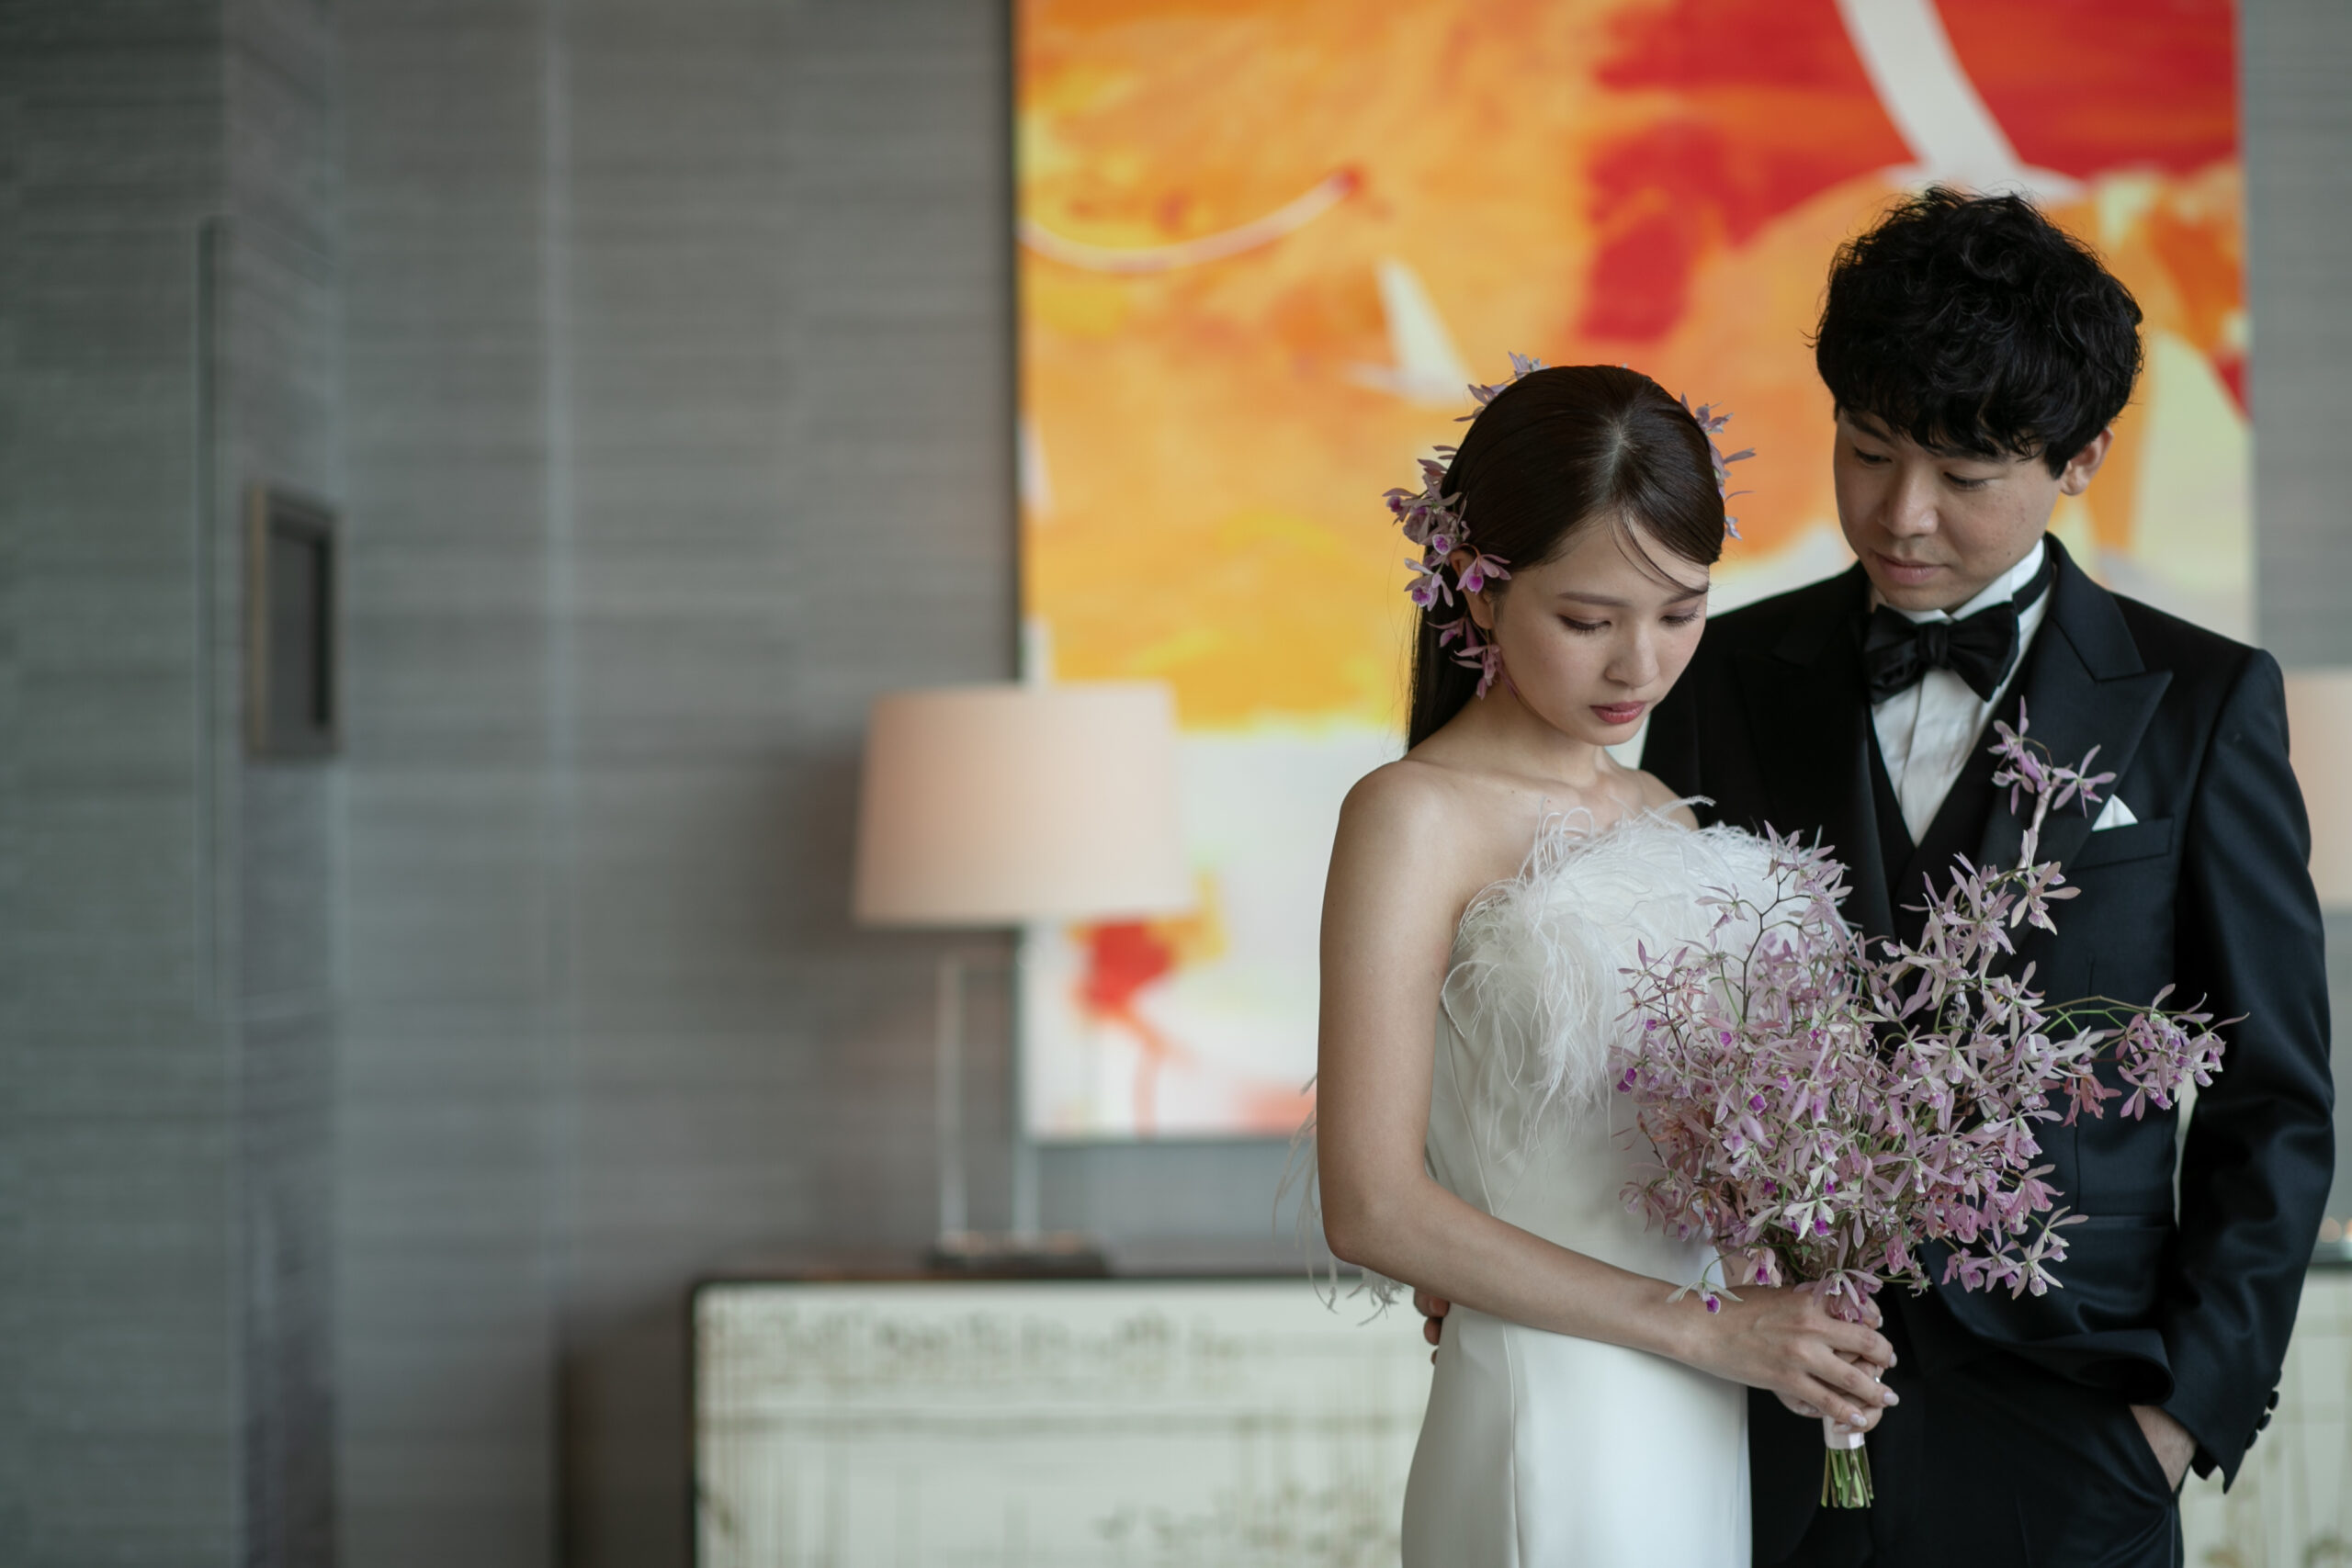 ザトリートドレッシングが提携しているラグジュアリーホテル、パレスホテル東京にて結婚式を挙げられる花嫁におすすめのJenny Packham(ジェニー パッカム)のウェディングドレスのご紹介。